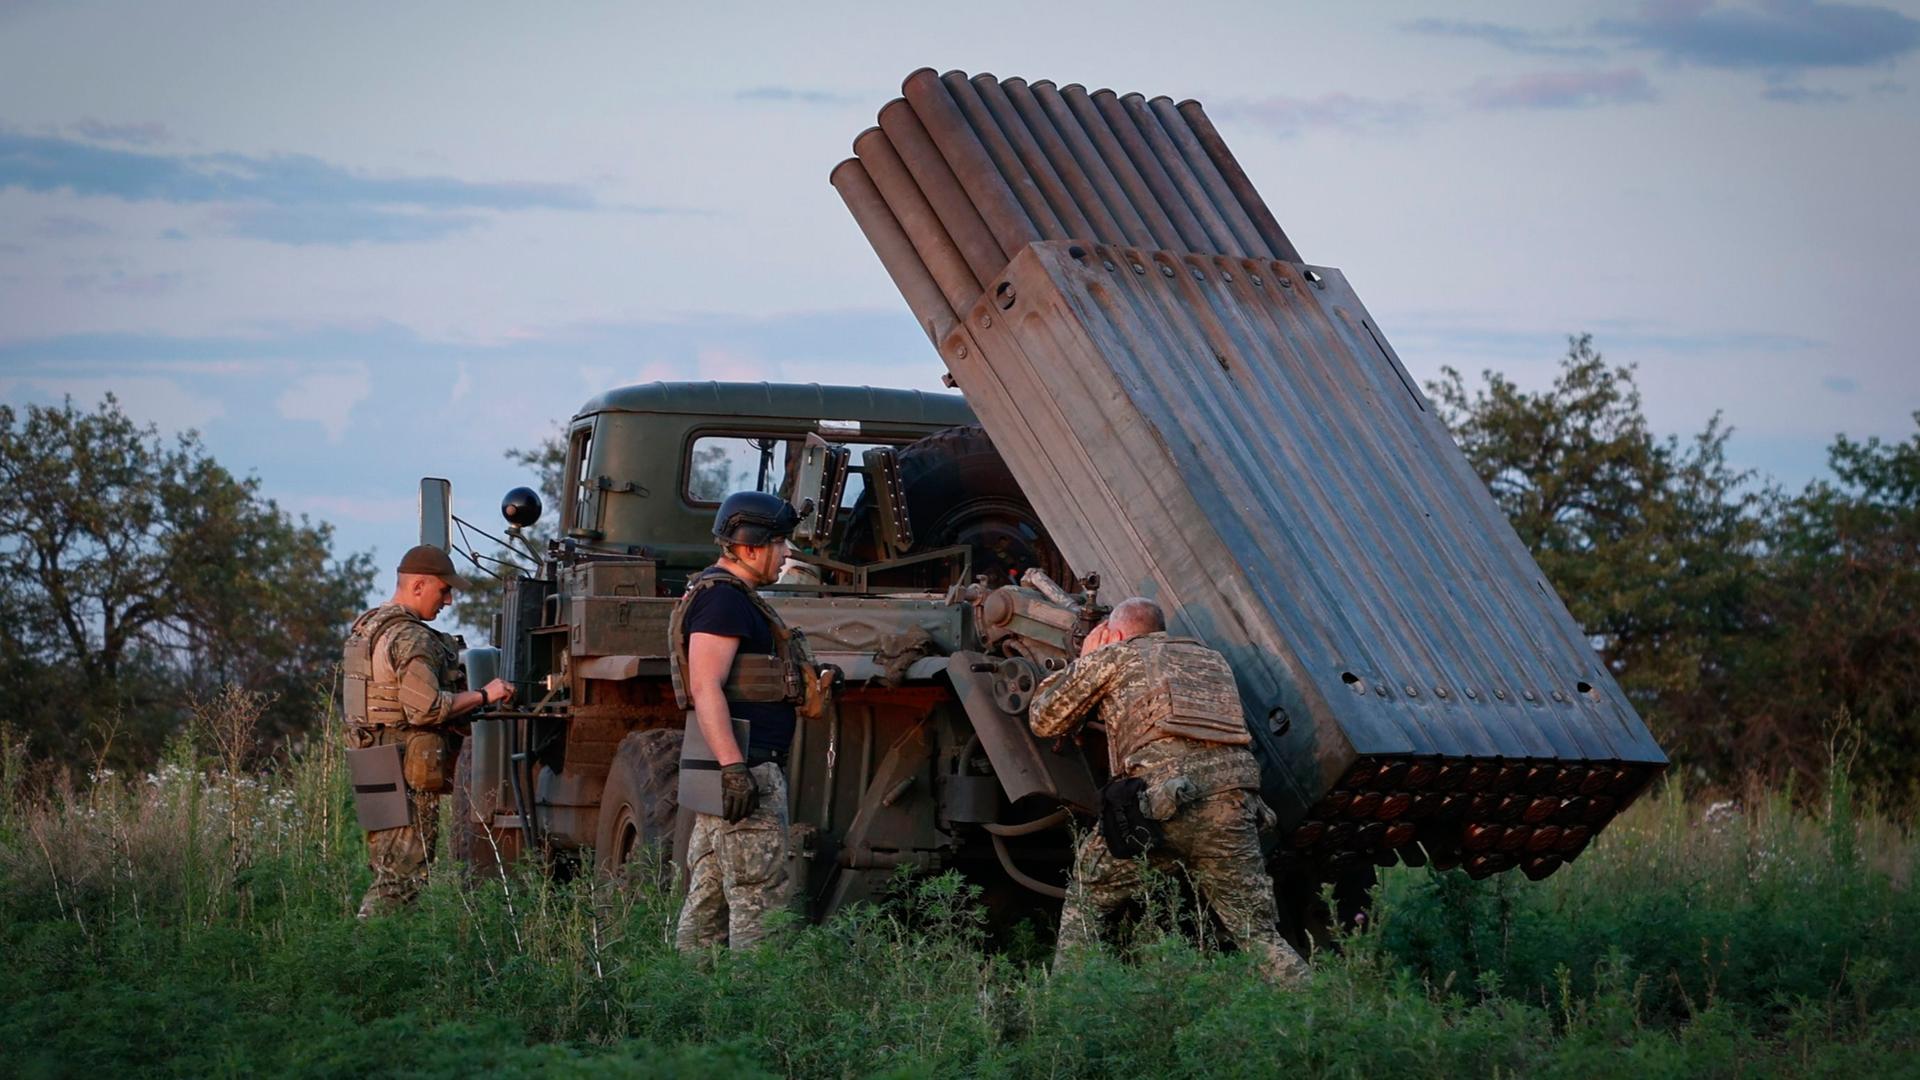 Ukrainische Soldaten bereiten einen Mehrfachraketenwerfer vor, um Raketen auf die russischen Stellungen an der Frontlinie in der Nähe von Bachmut abzufeuern.